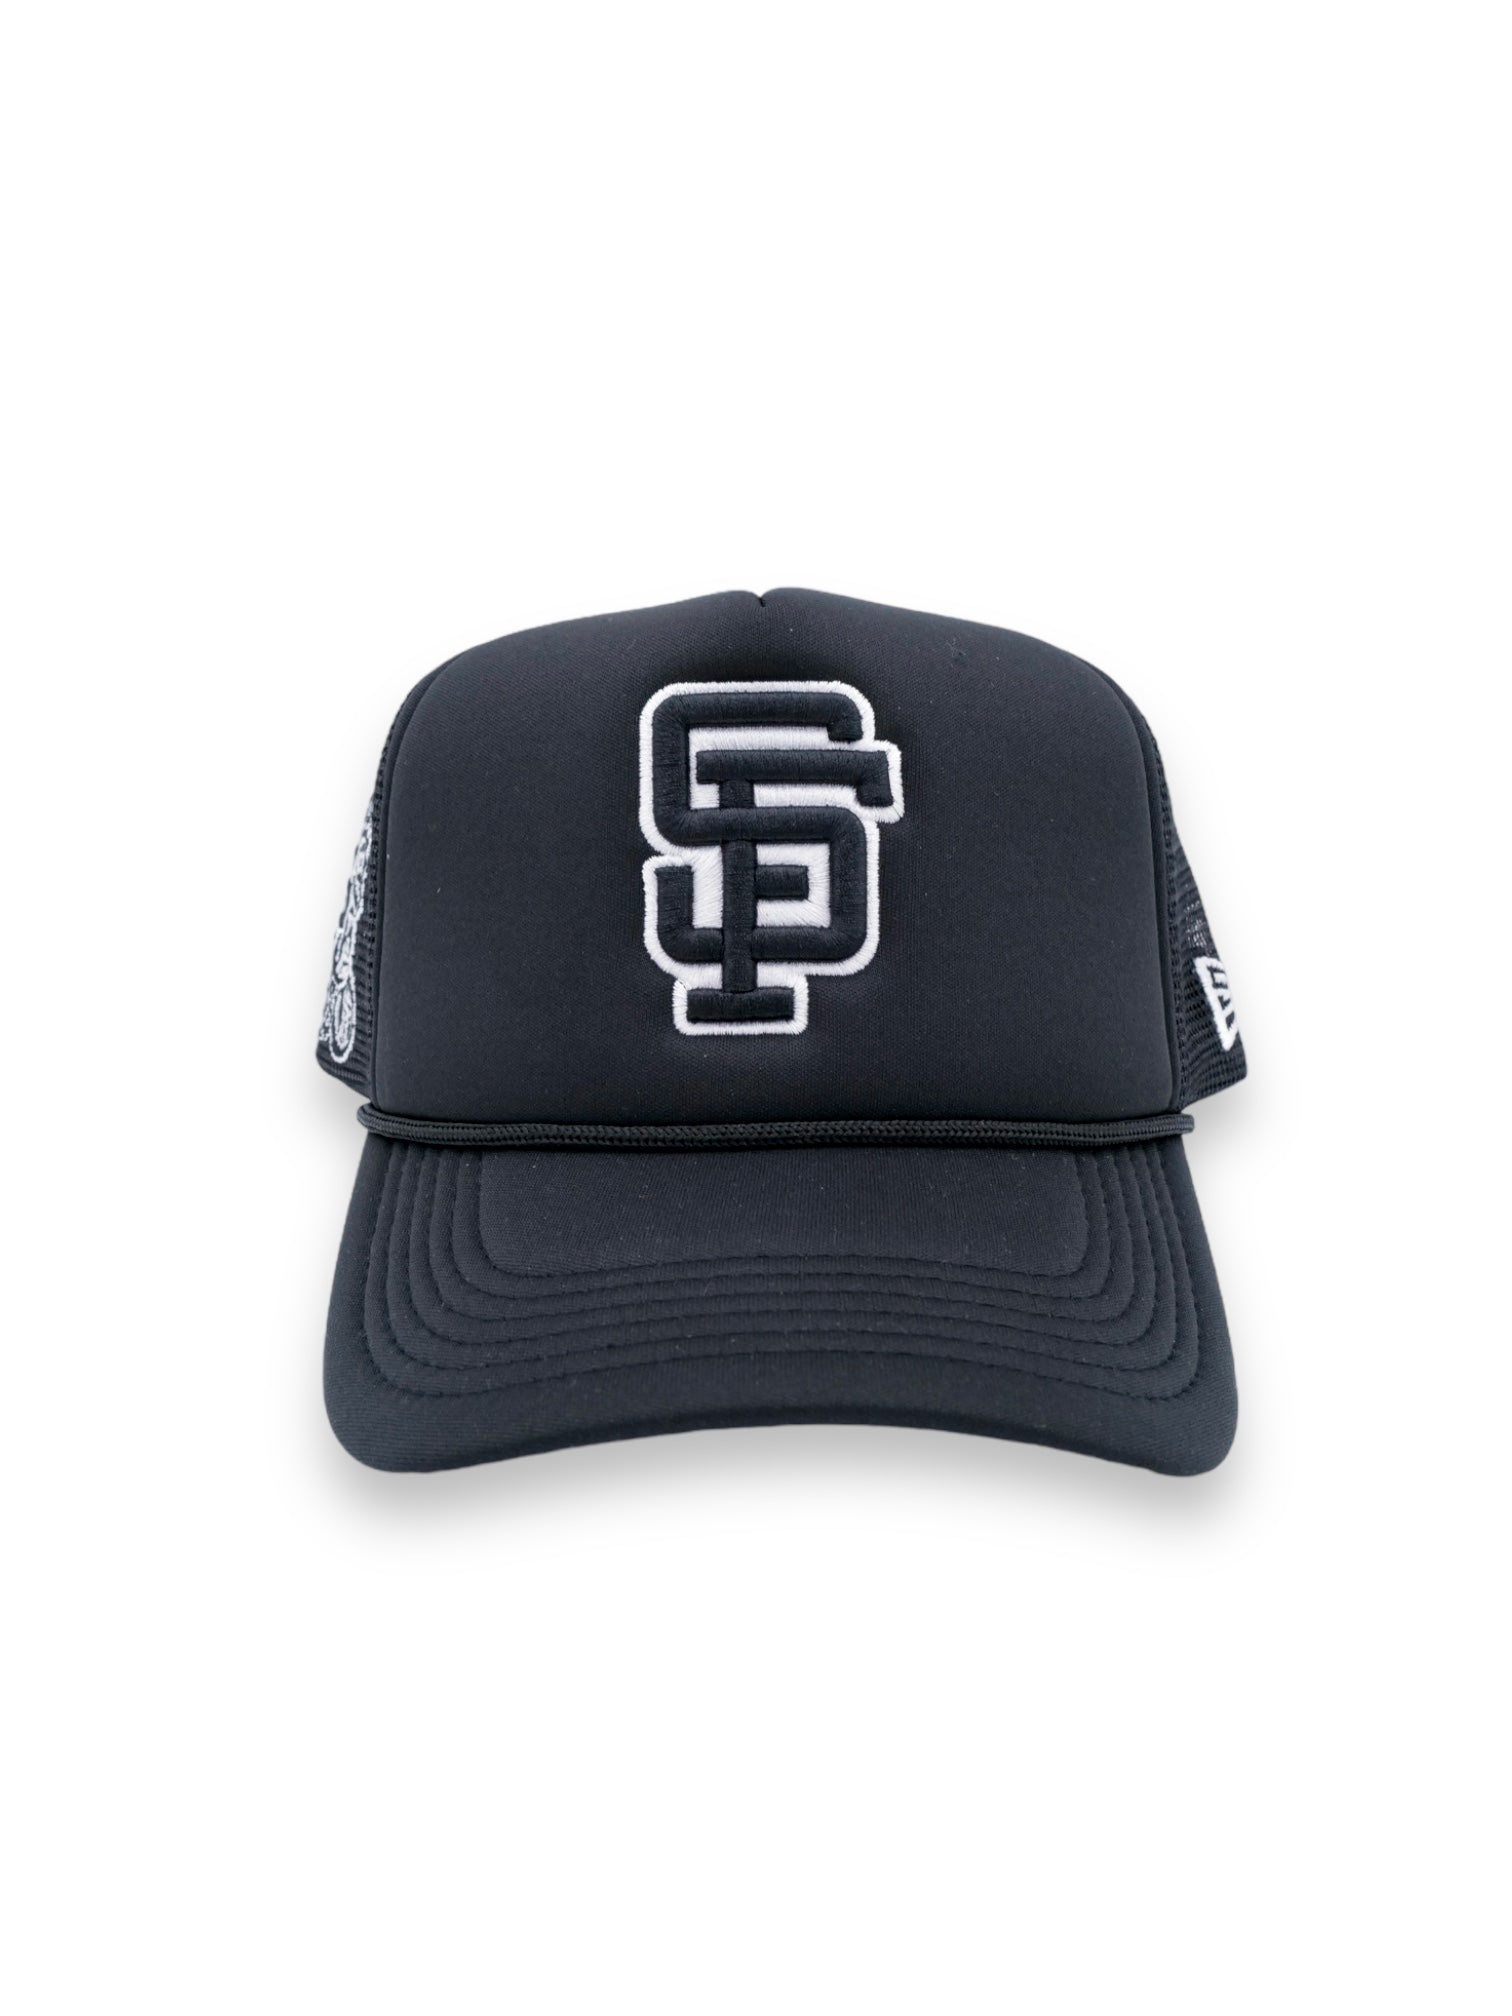 SF trucker hat